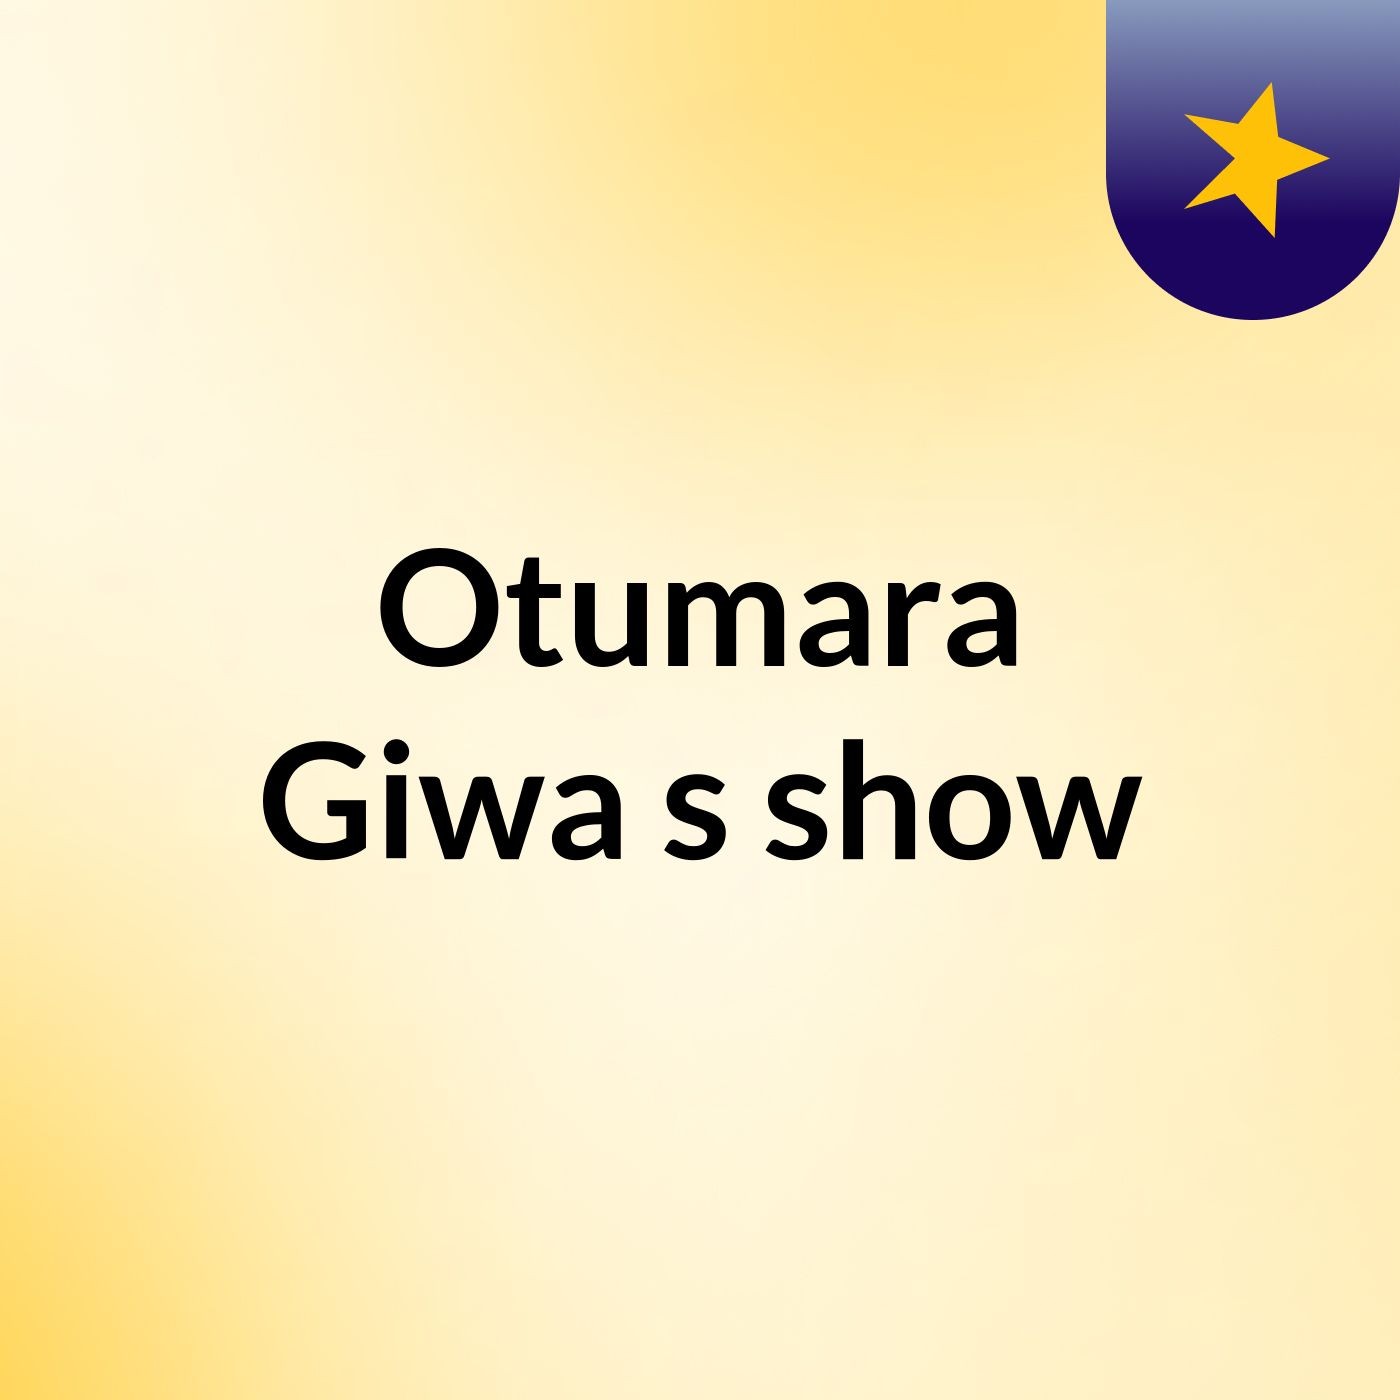 Otumara Giwa's show